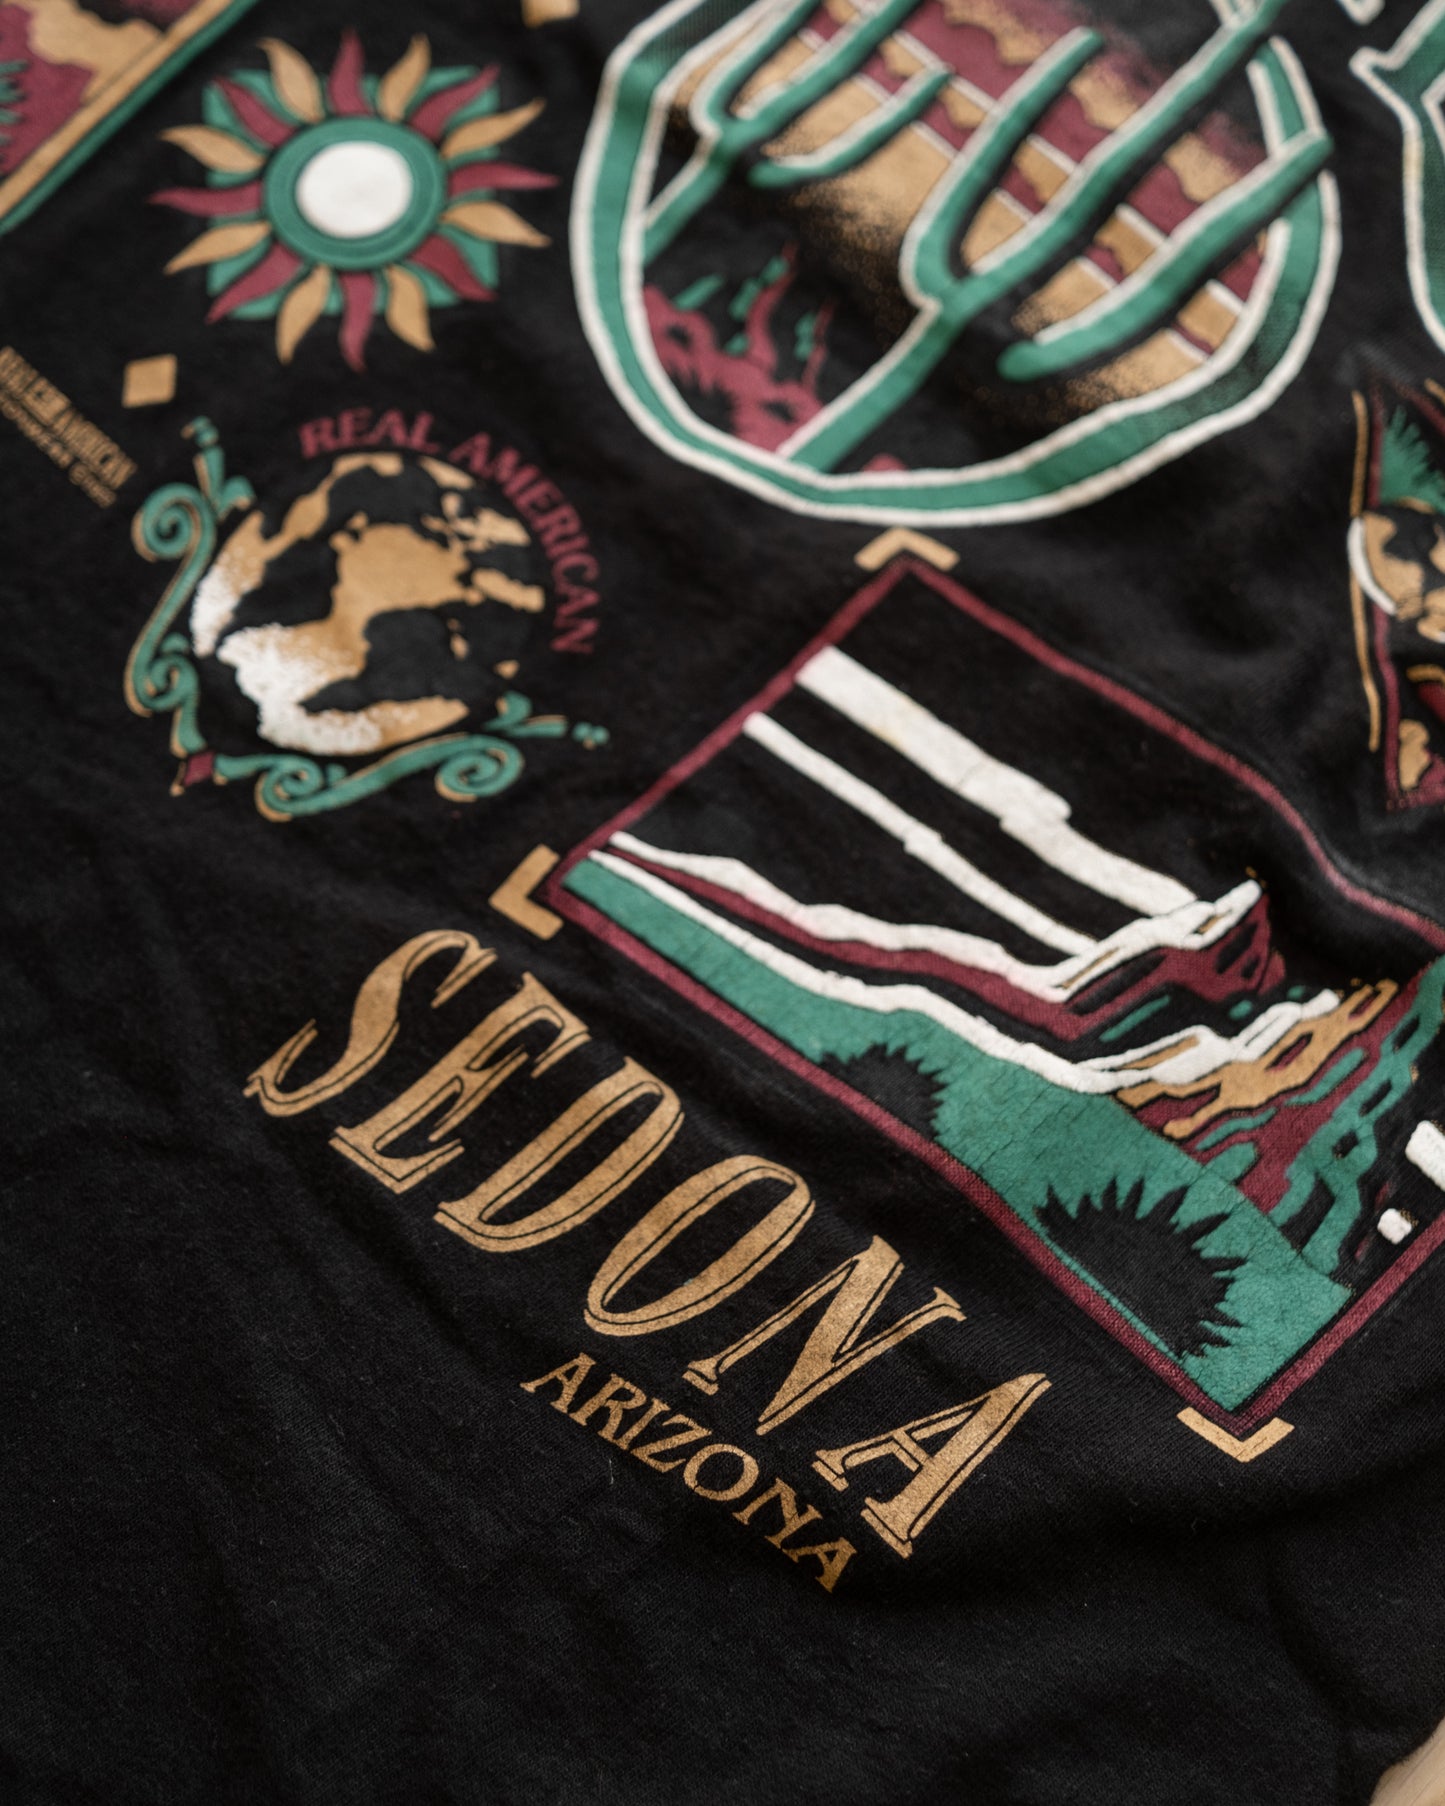 Legendary Lands Sedona AZ 1992 Vintage T-Shirt Size S